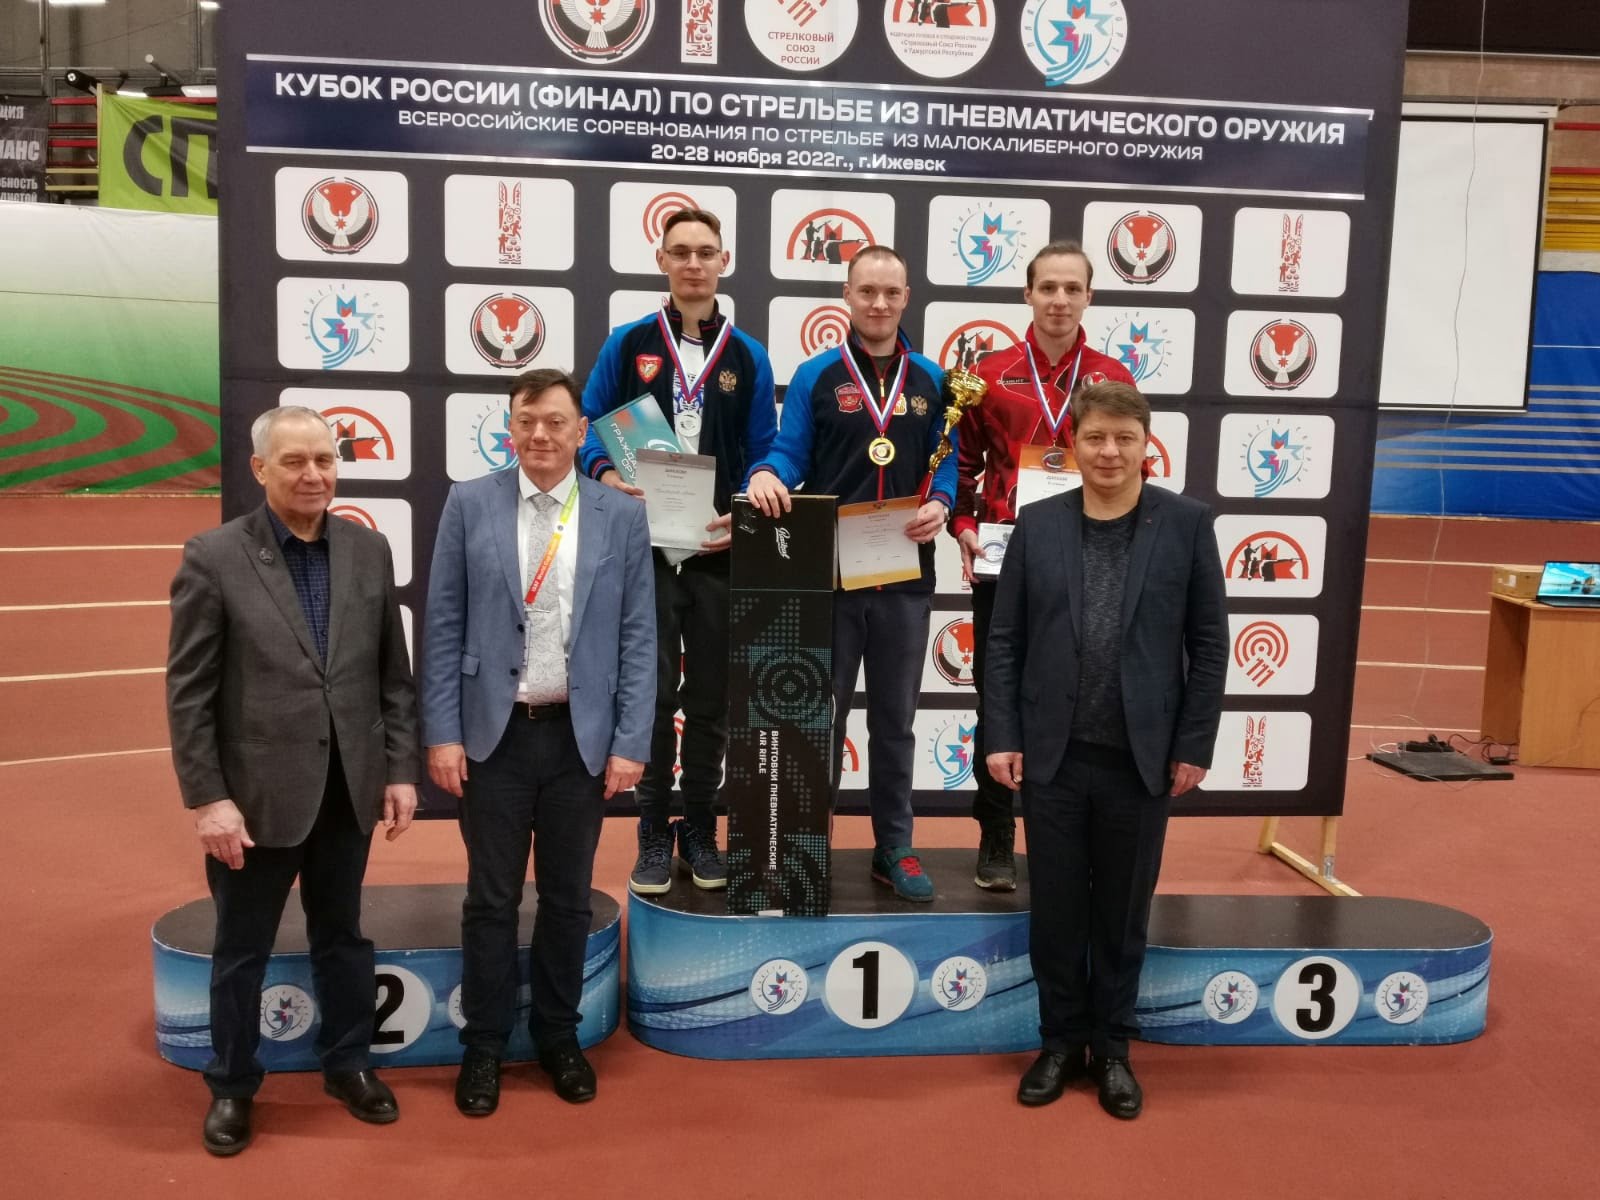 Иркутский стрелок Артем Черноусов завоевал две золотые медали в финале Кубка России